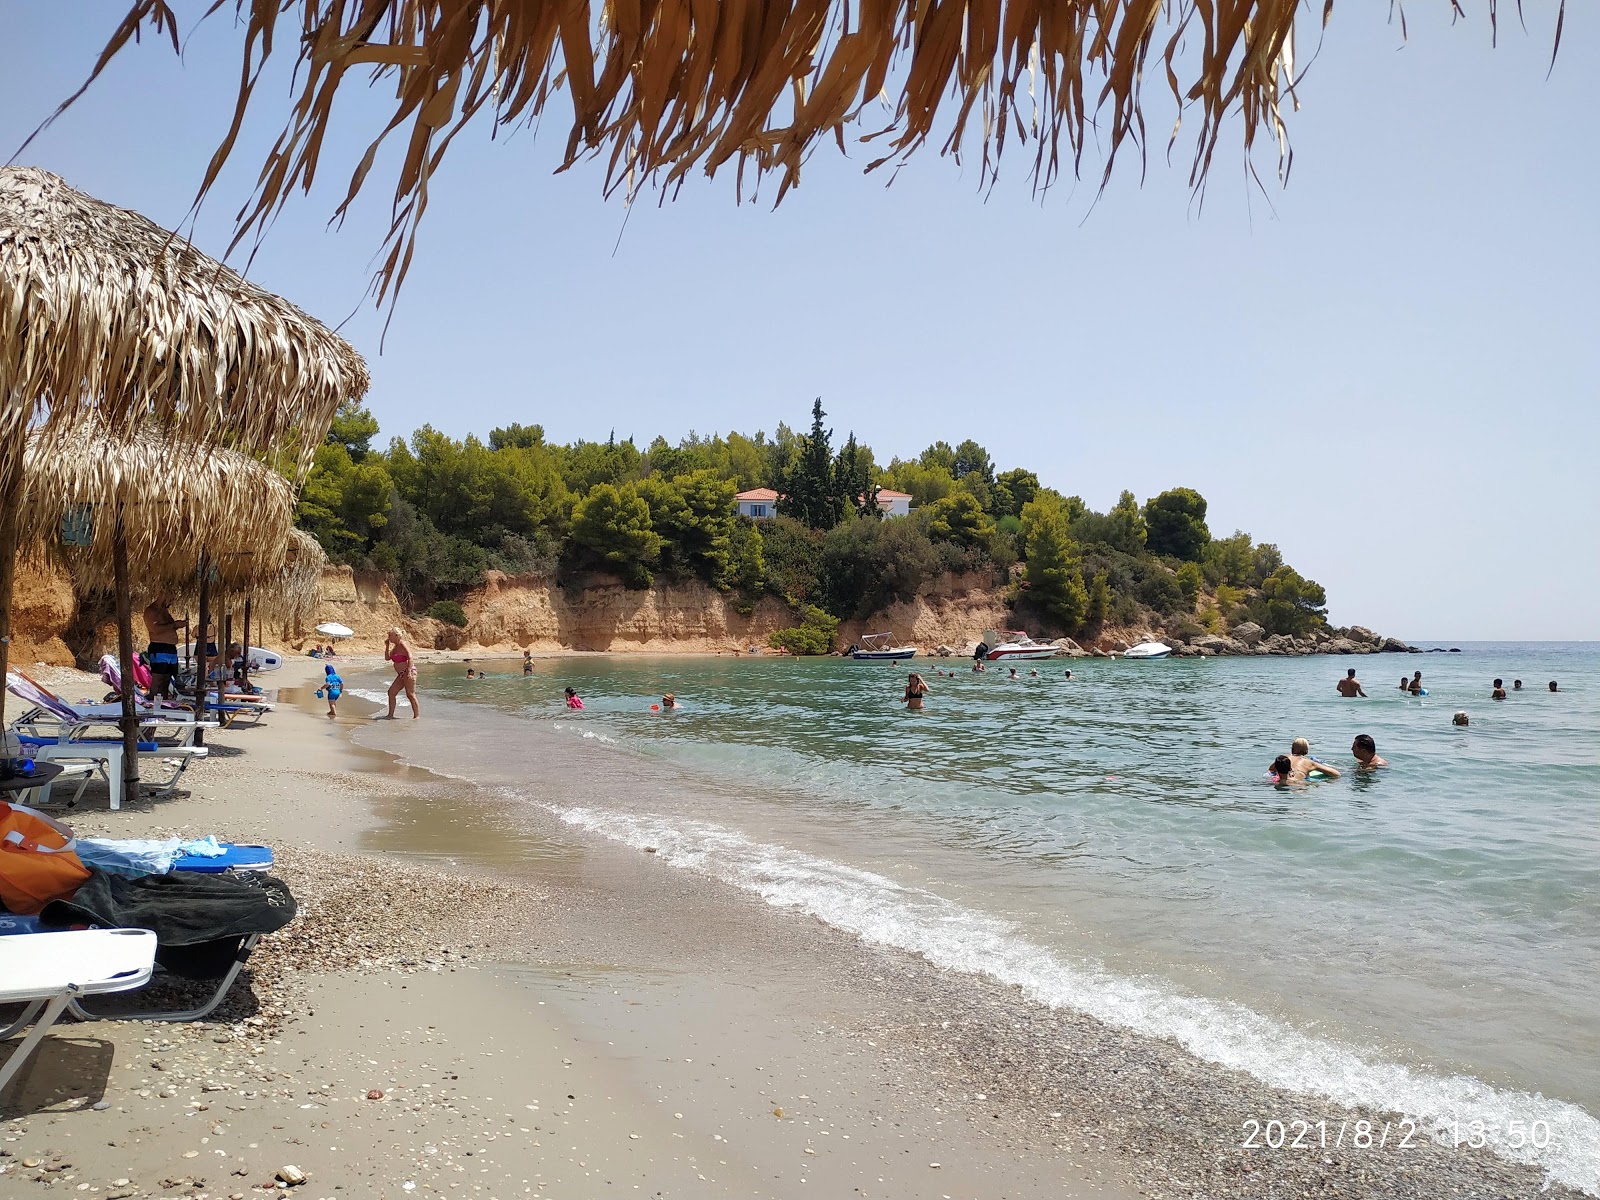 Fotografie cu Chrysi Akti beach cu o suprafață de apa pură turcoaz